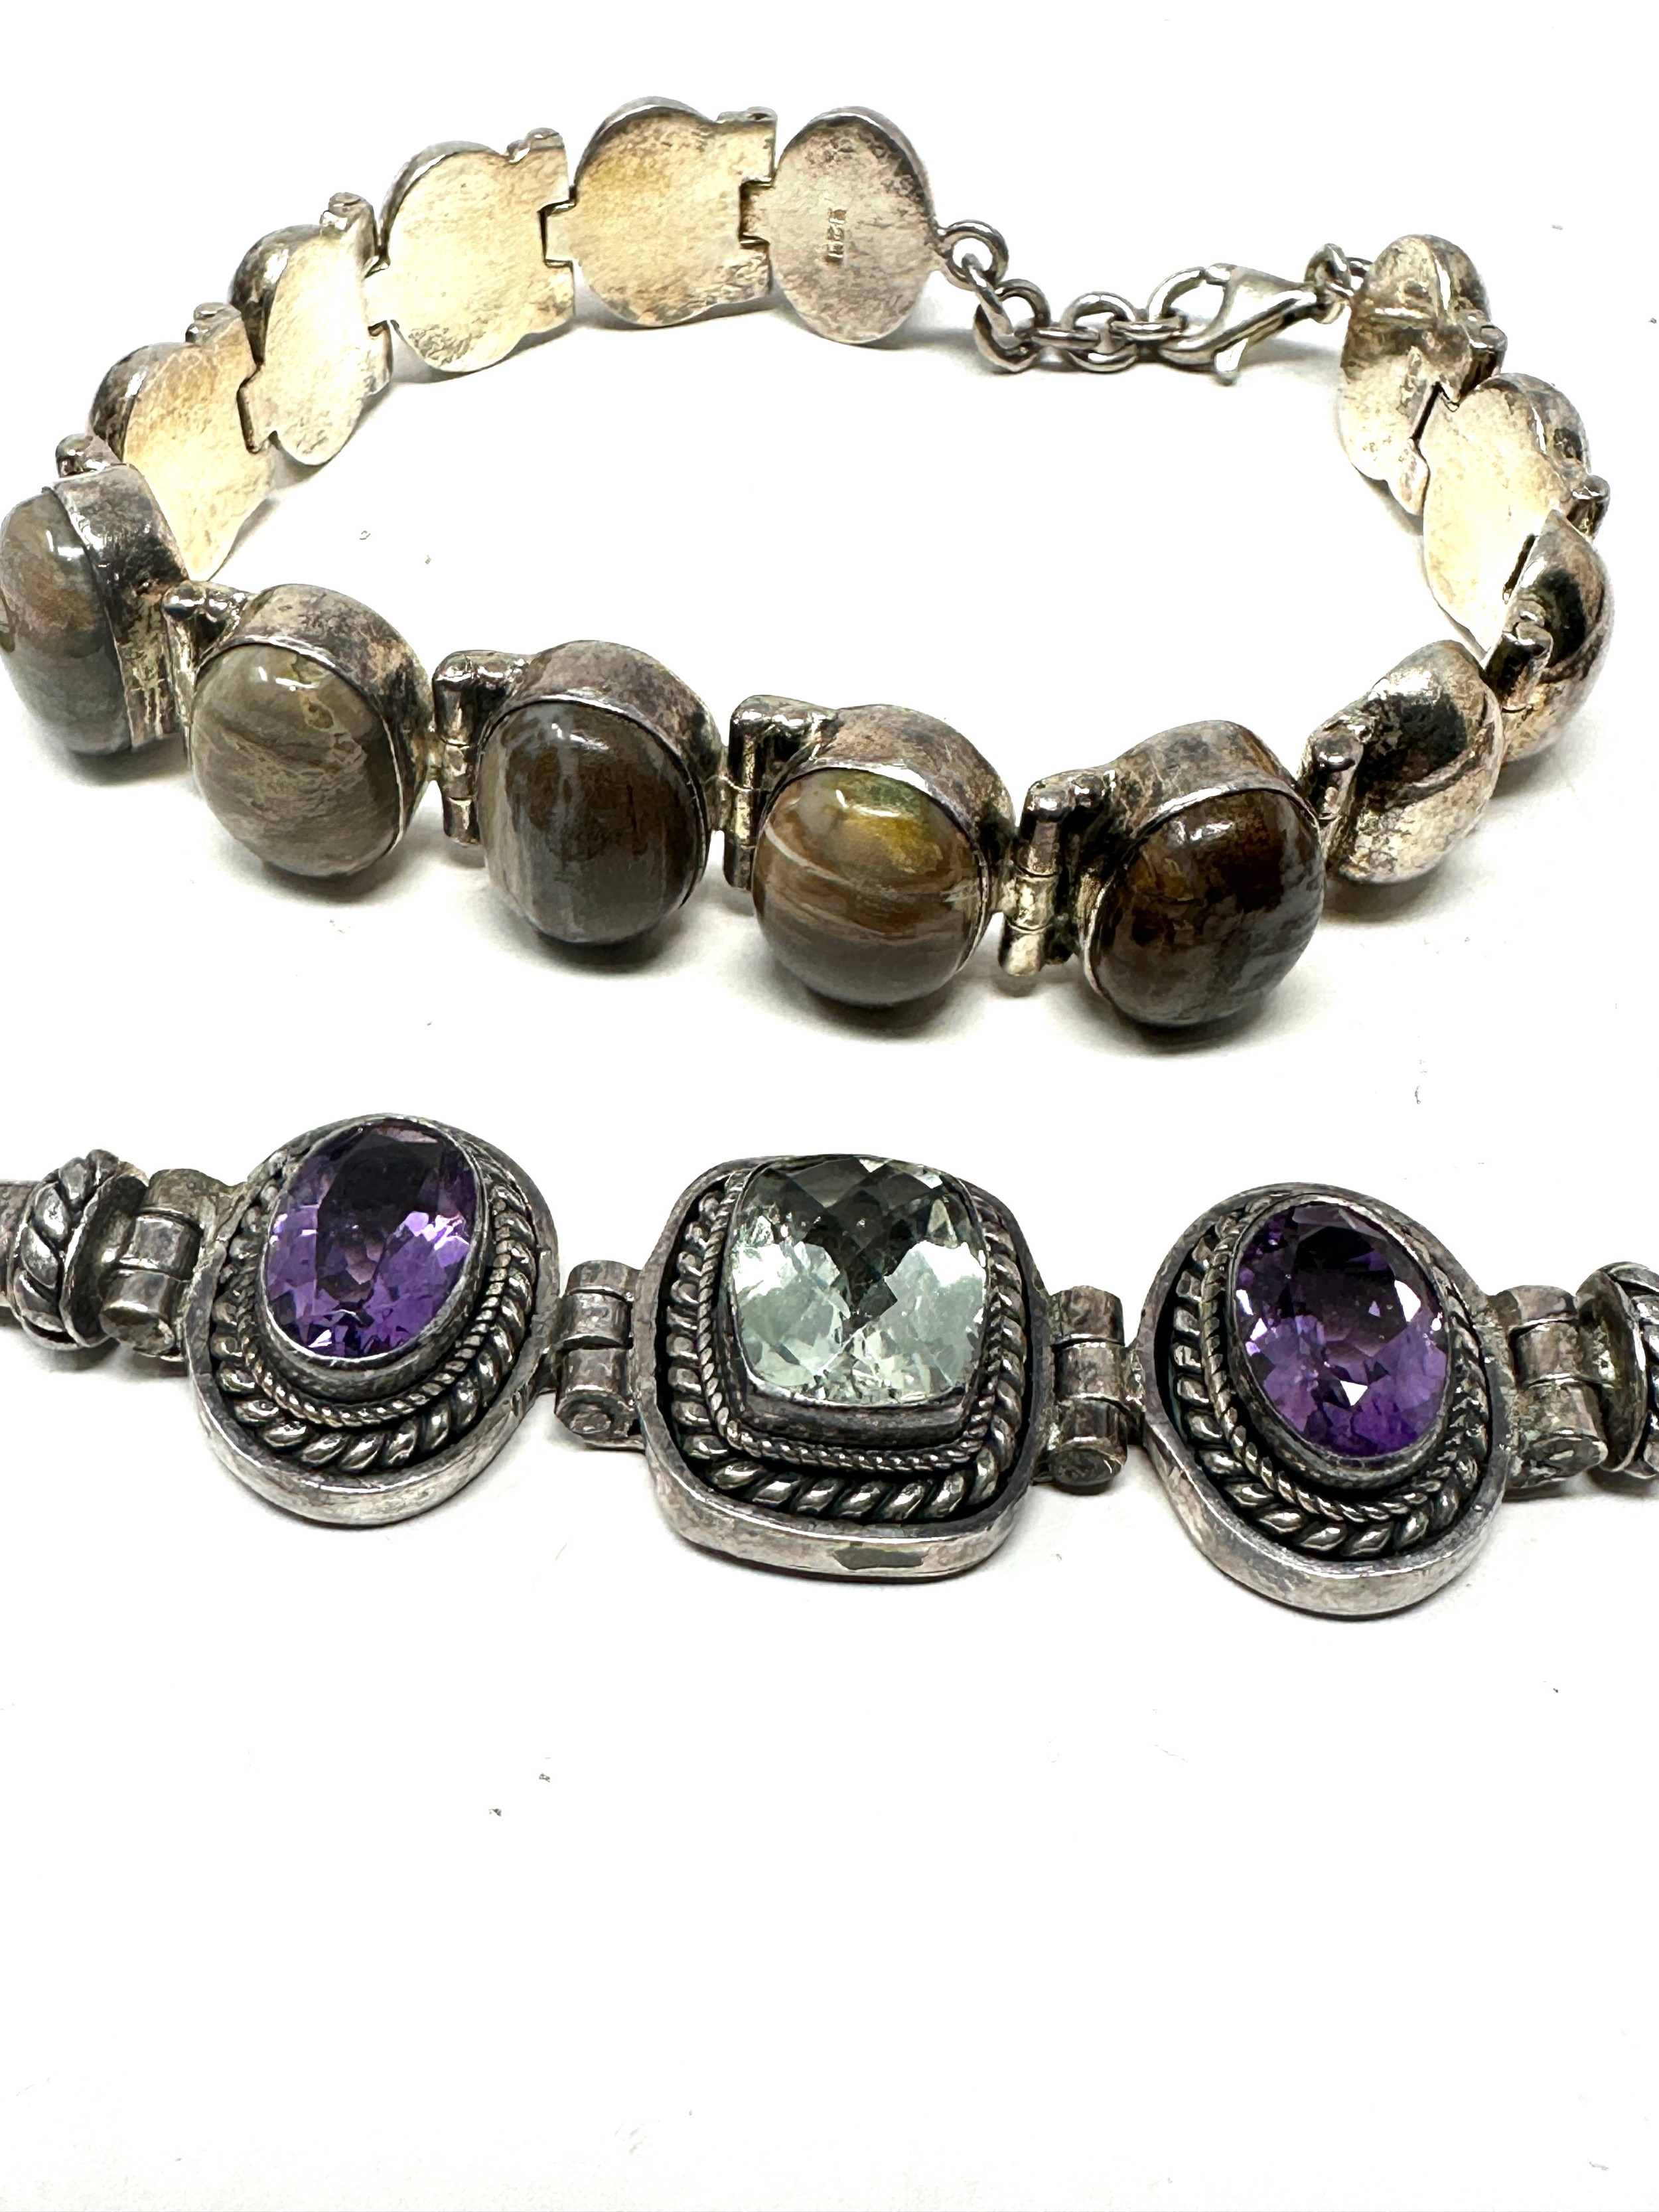 2 X .925 Gemstone Set Bracelets (76g) - Image 2 of 2